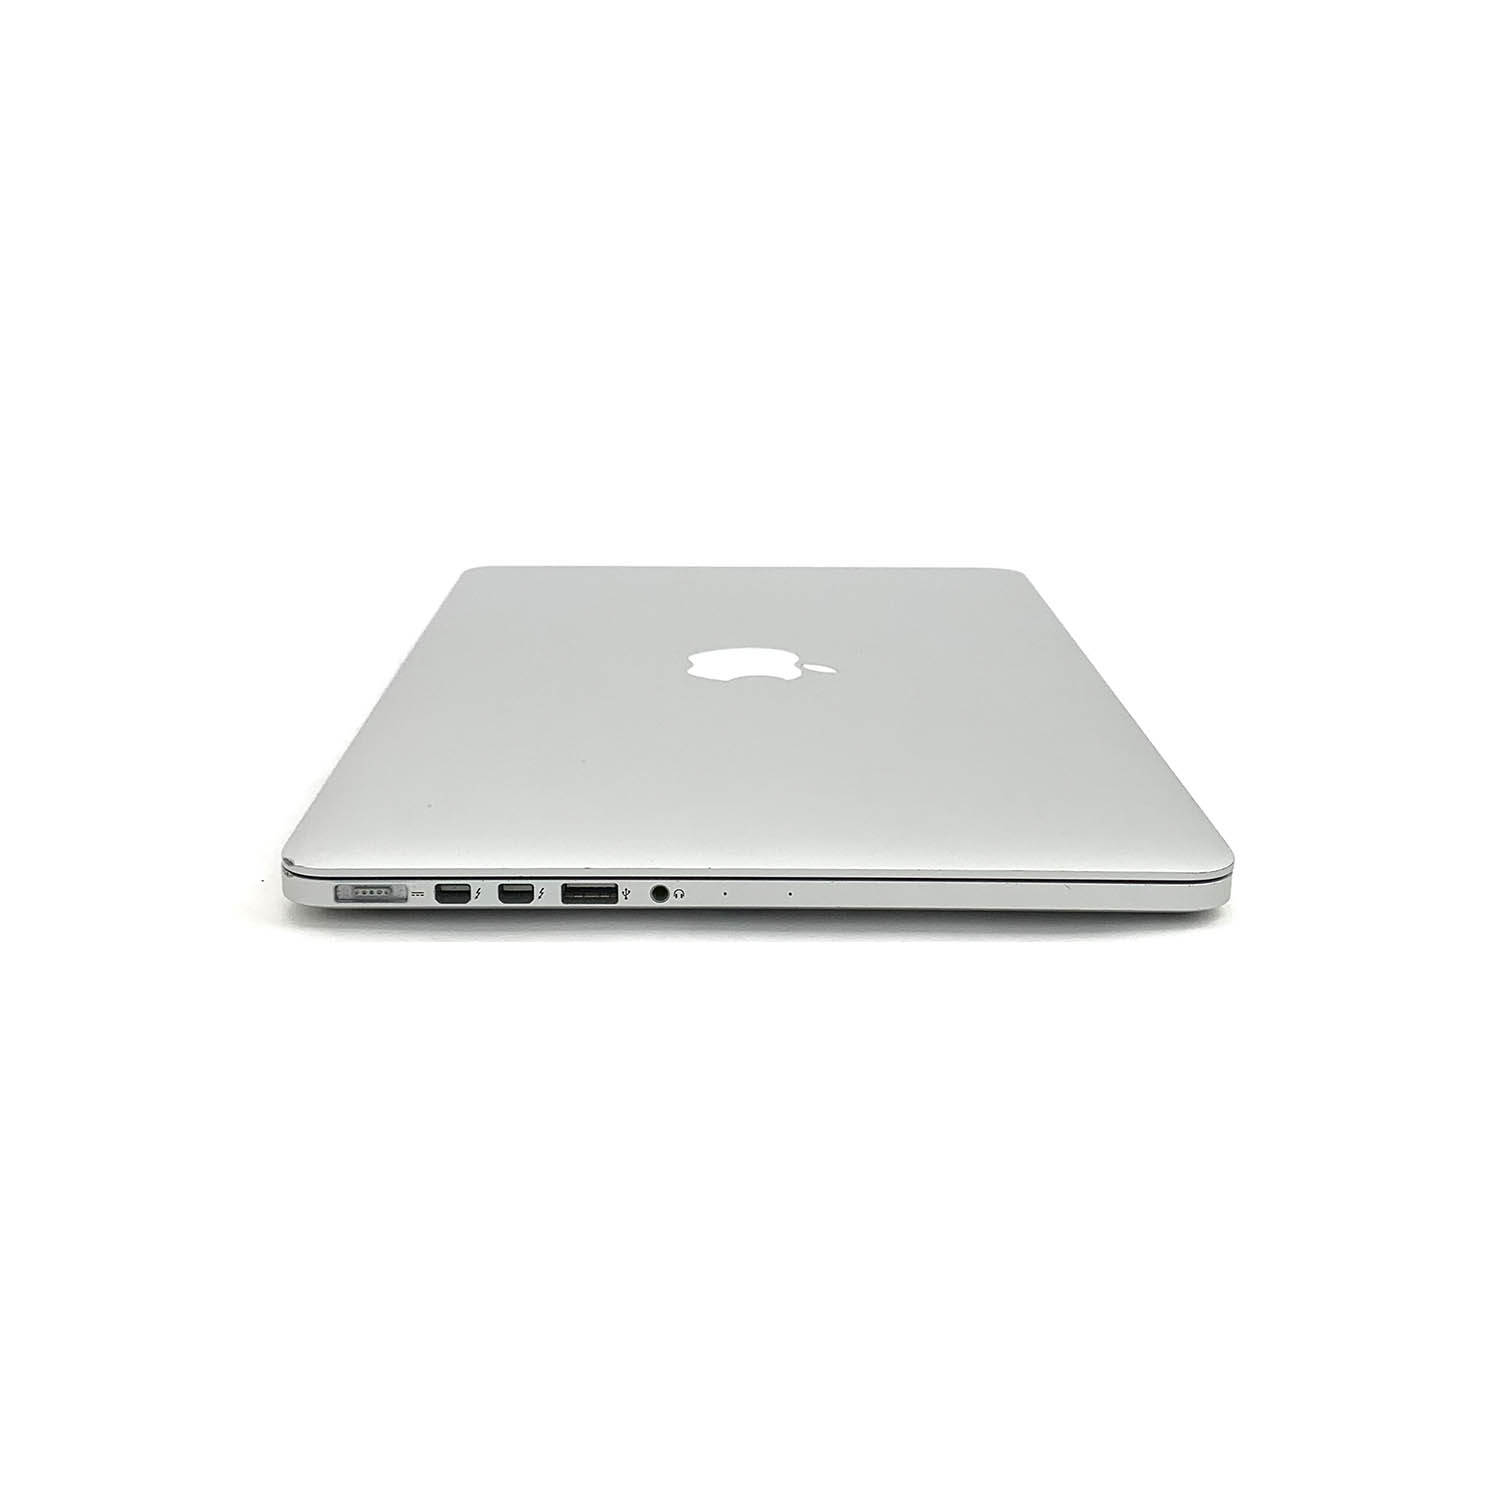 Macbook Pro Retina 13 i5 2.7Ghz 8GB 256GB SSD MF839LL/A Seminovo